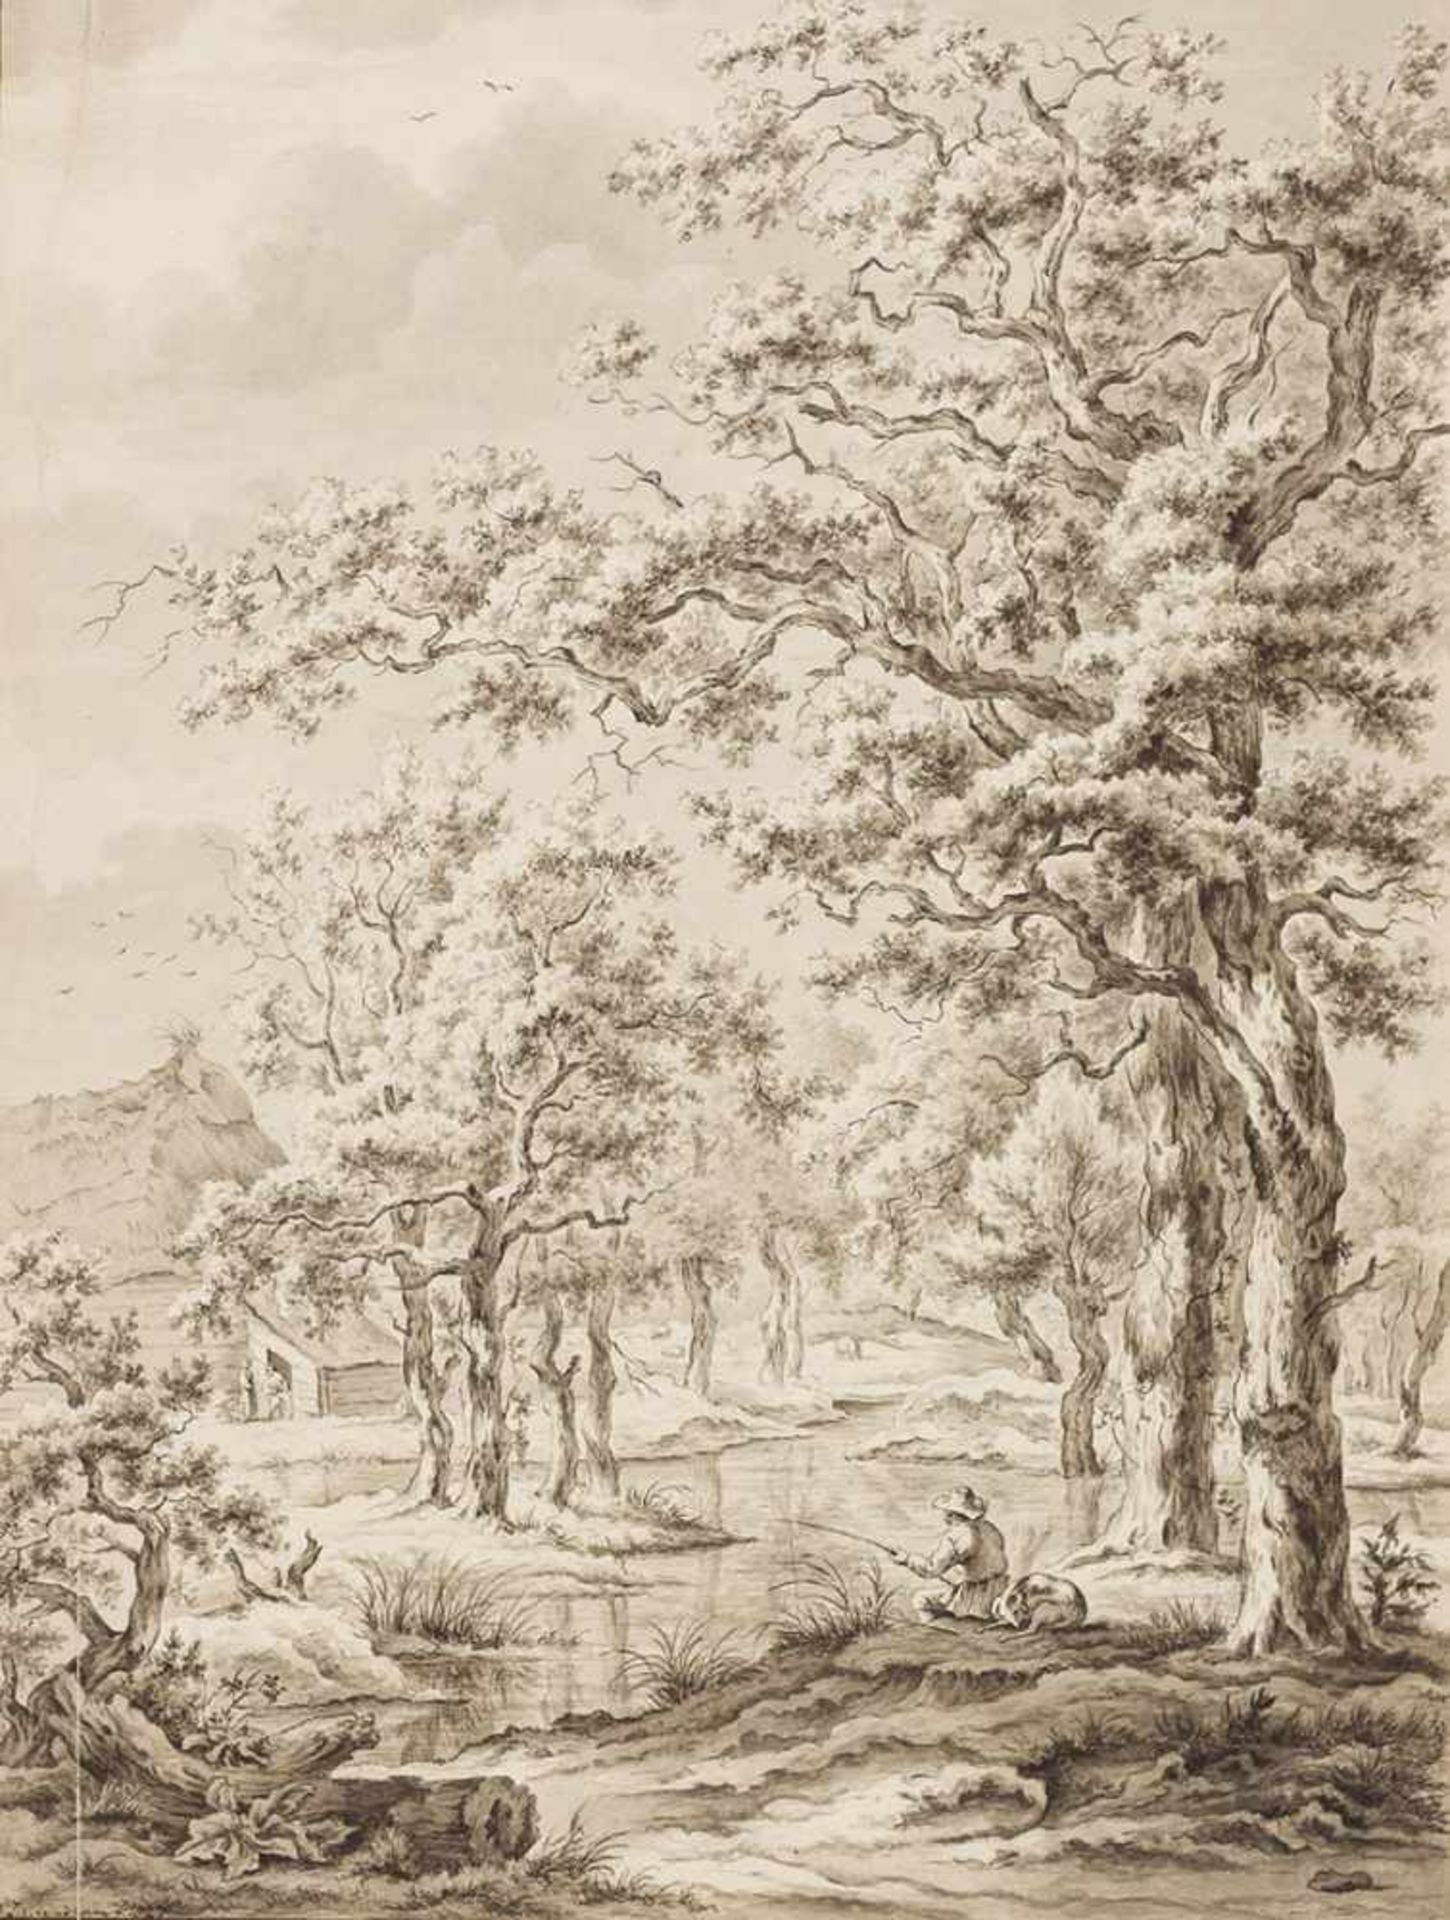 Eyndhoven, N. J. van.Baumlandschaft mit Angler. Zeichnung. Tuschpinsel in Umbra, signiert u. datiert